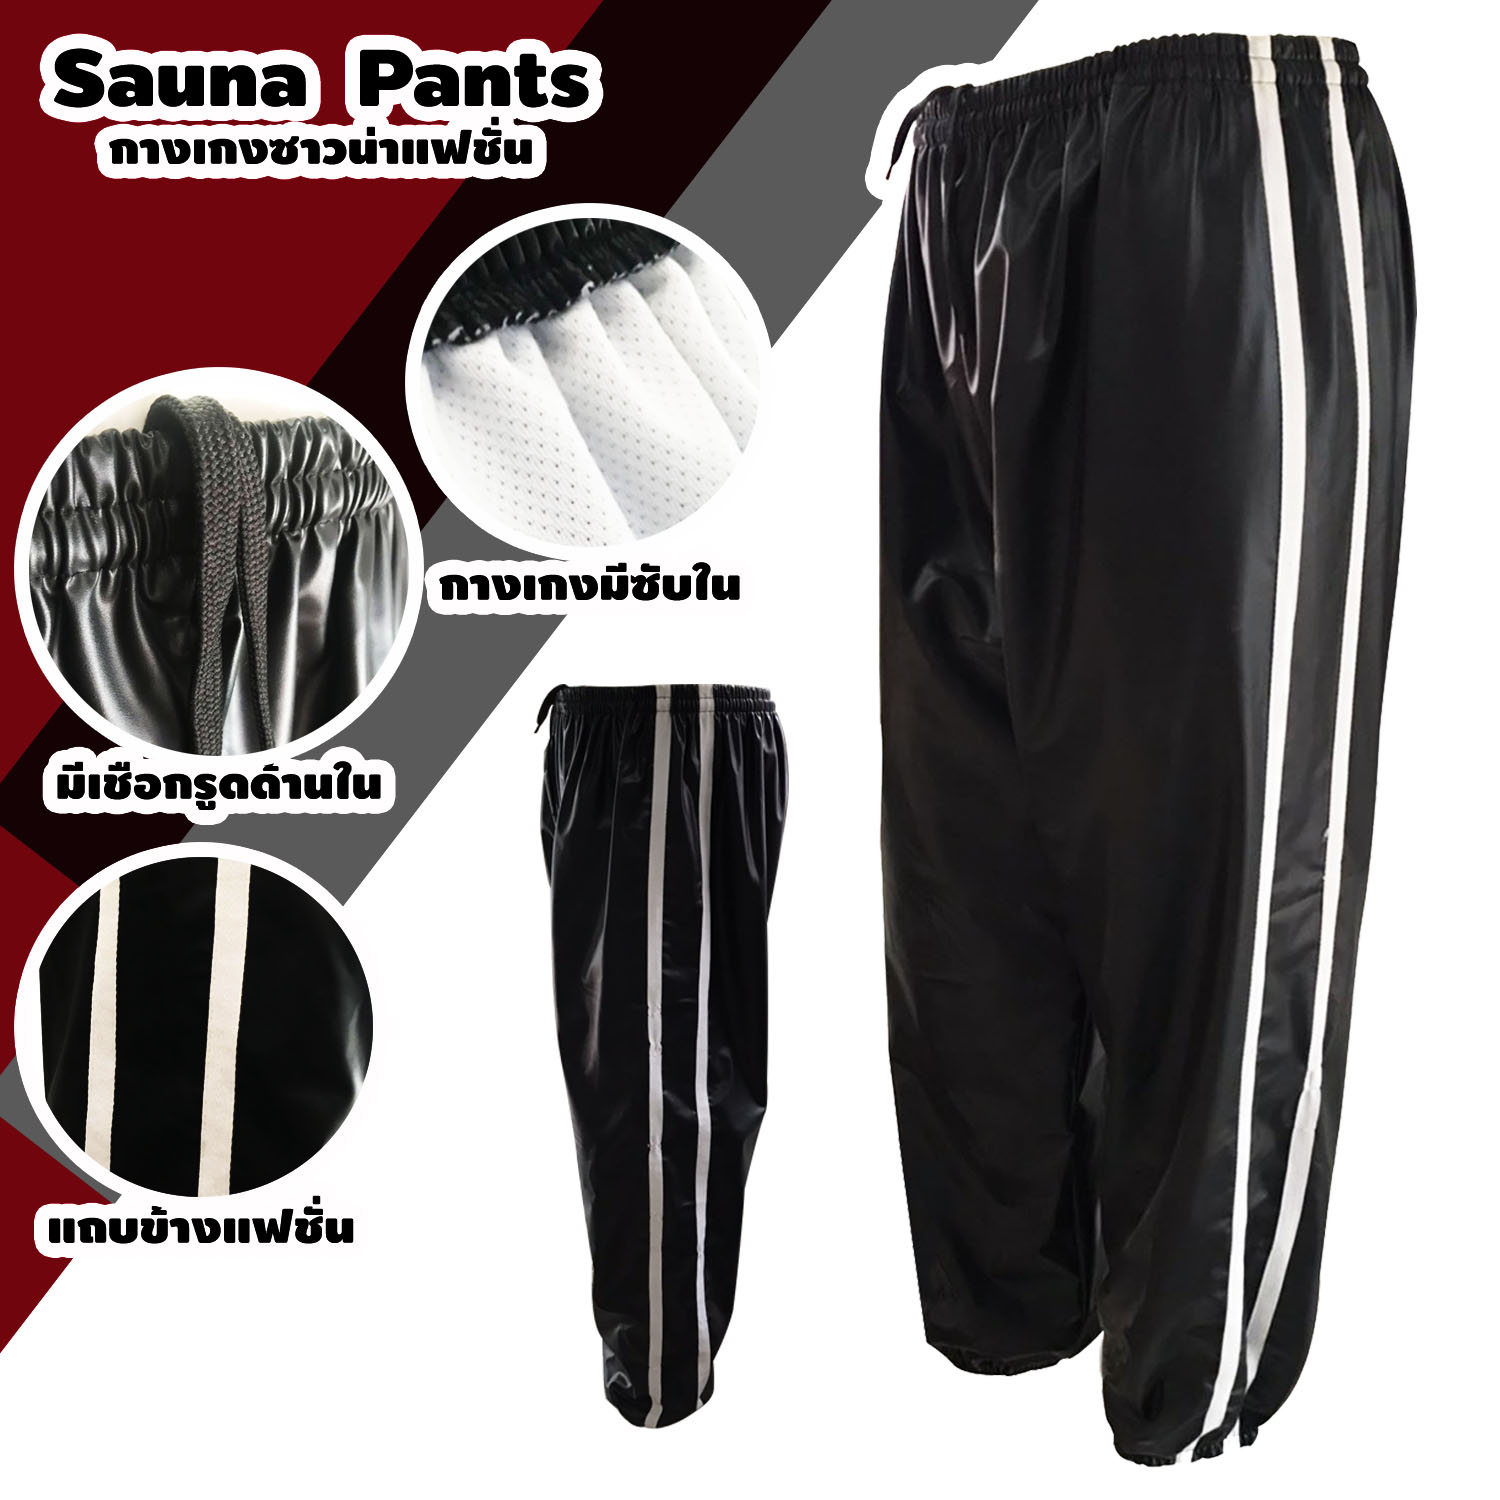 กางเกงซาวน่า Sports Theme เฉพาะกางเกง Sauna Pants กีฬา รุ่นใหม่ แถบคู่ด้านข้าง มีซับใน ออกกำลังกาย รีดเหงื่อ ลดน้ำหนัก ใส่ฟิตเนสได้